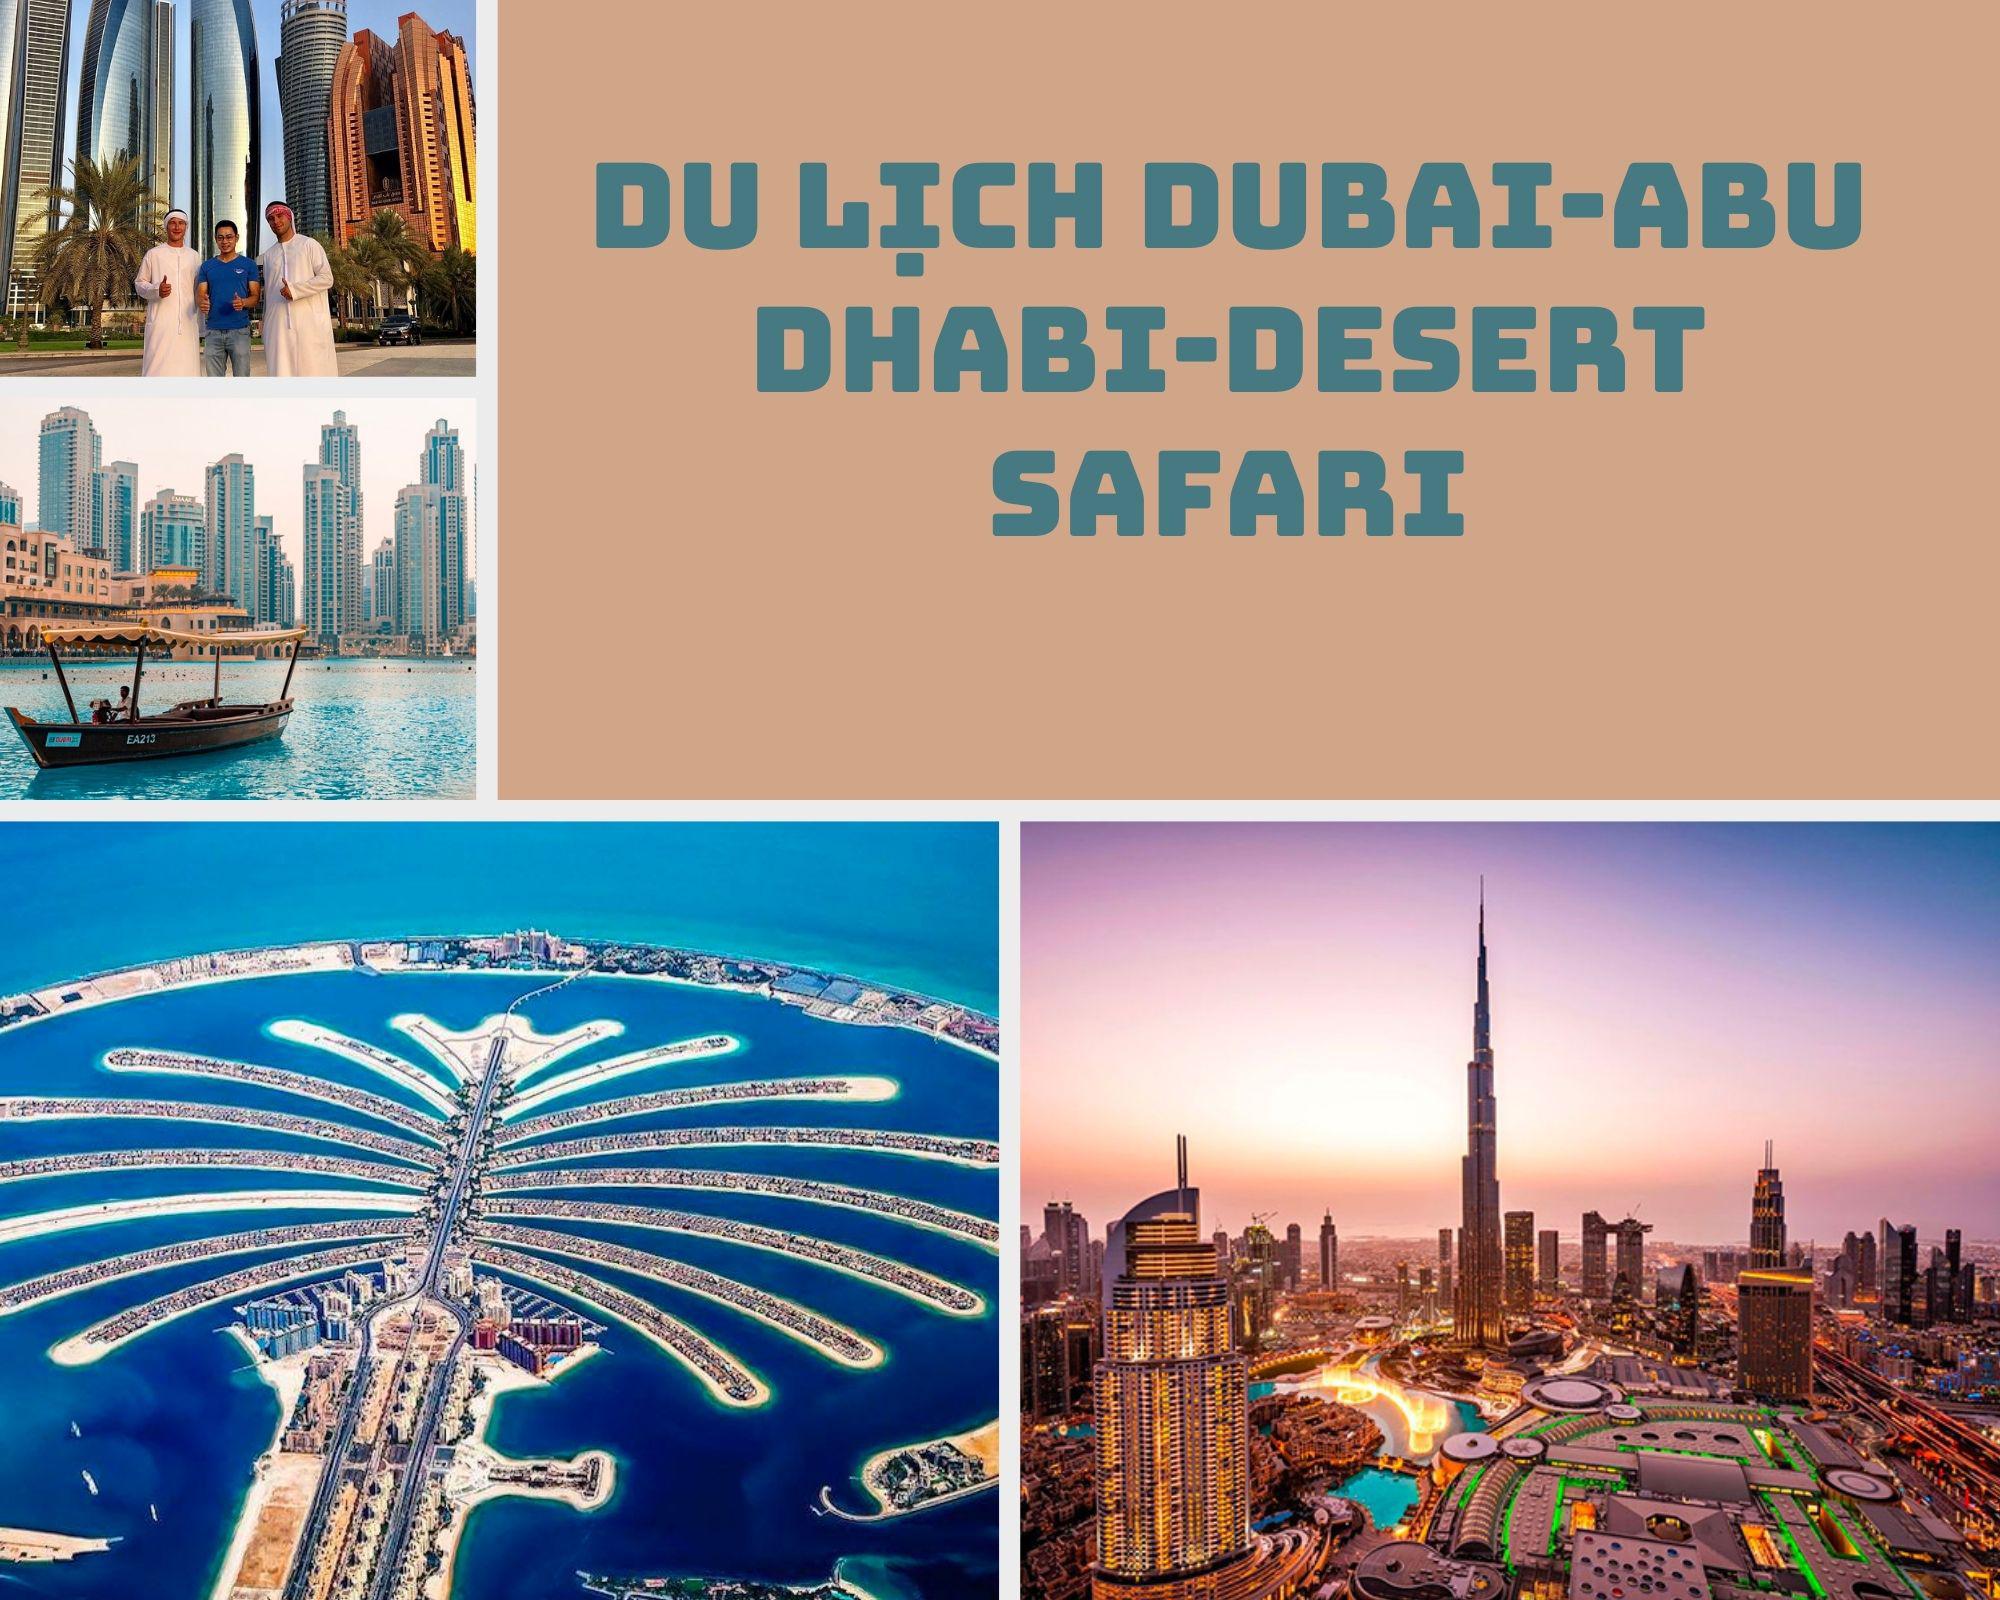 Du lịch Dubai-Abu Dhabi-Desert Safari